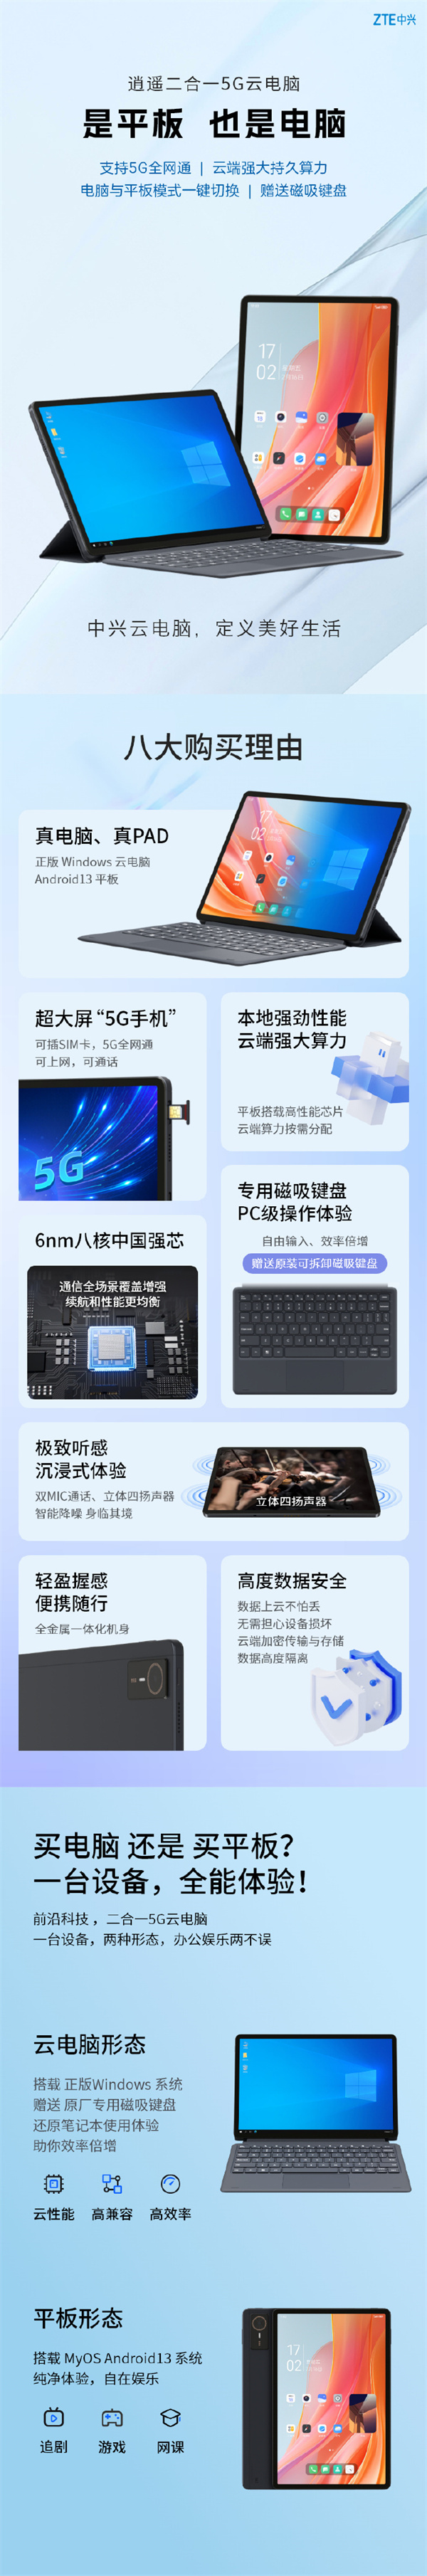 中兴二合一 5G 云电脑“逍遥”系列开售